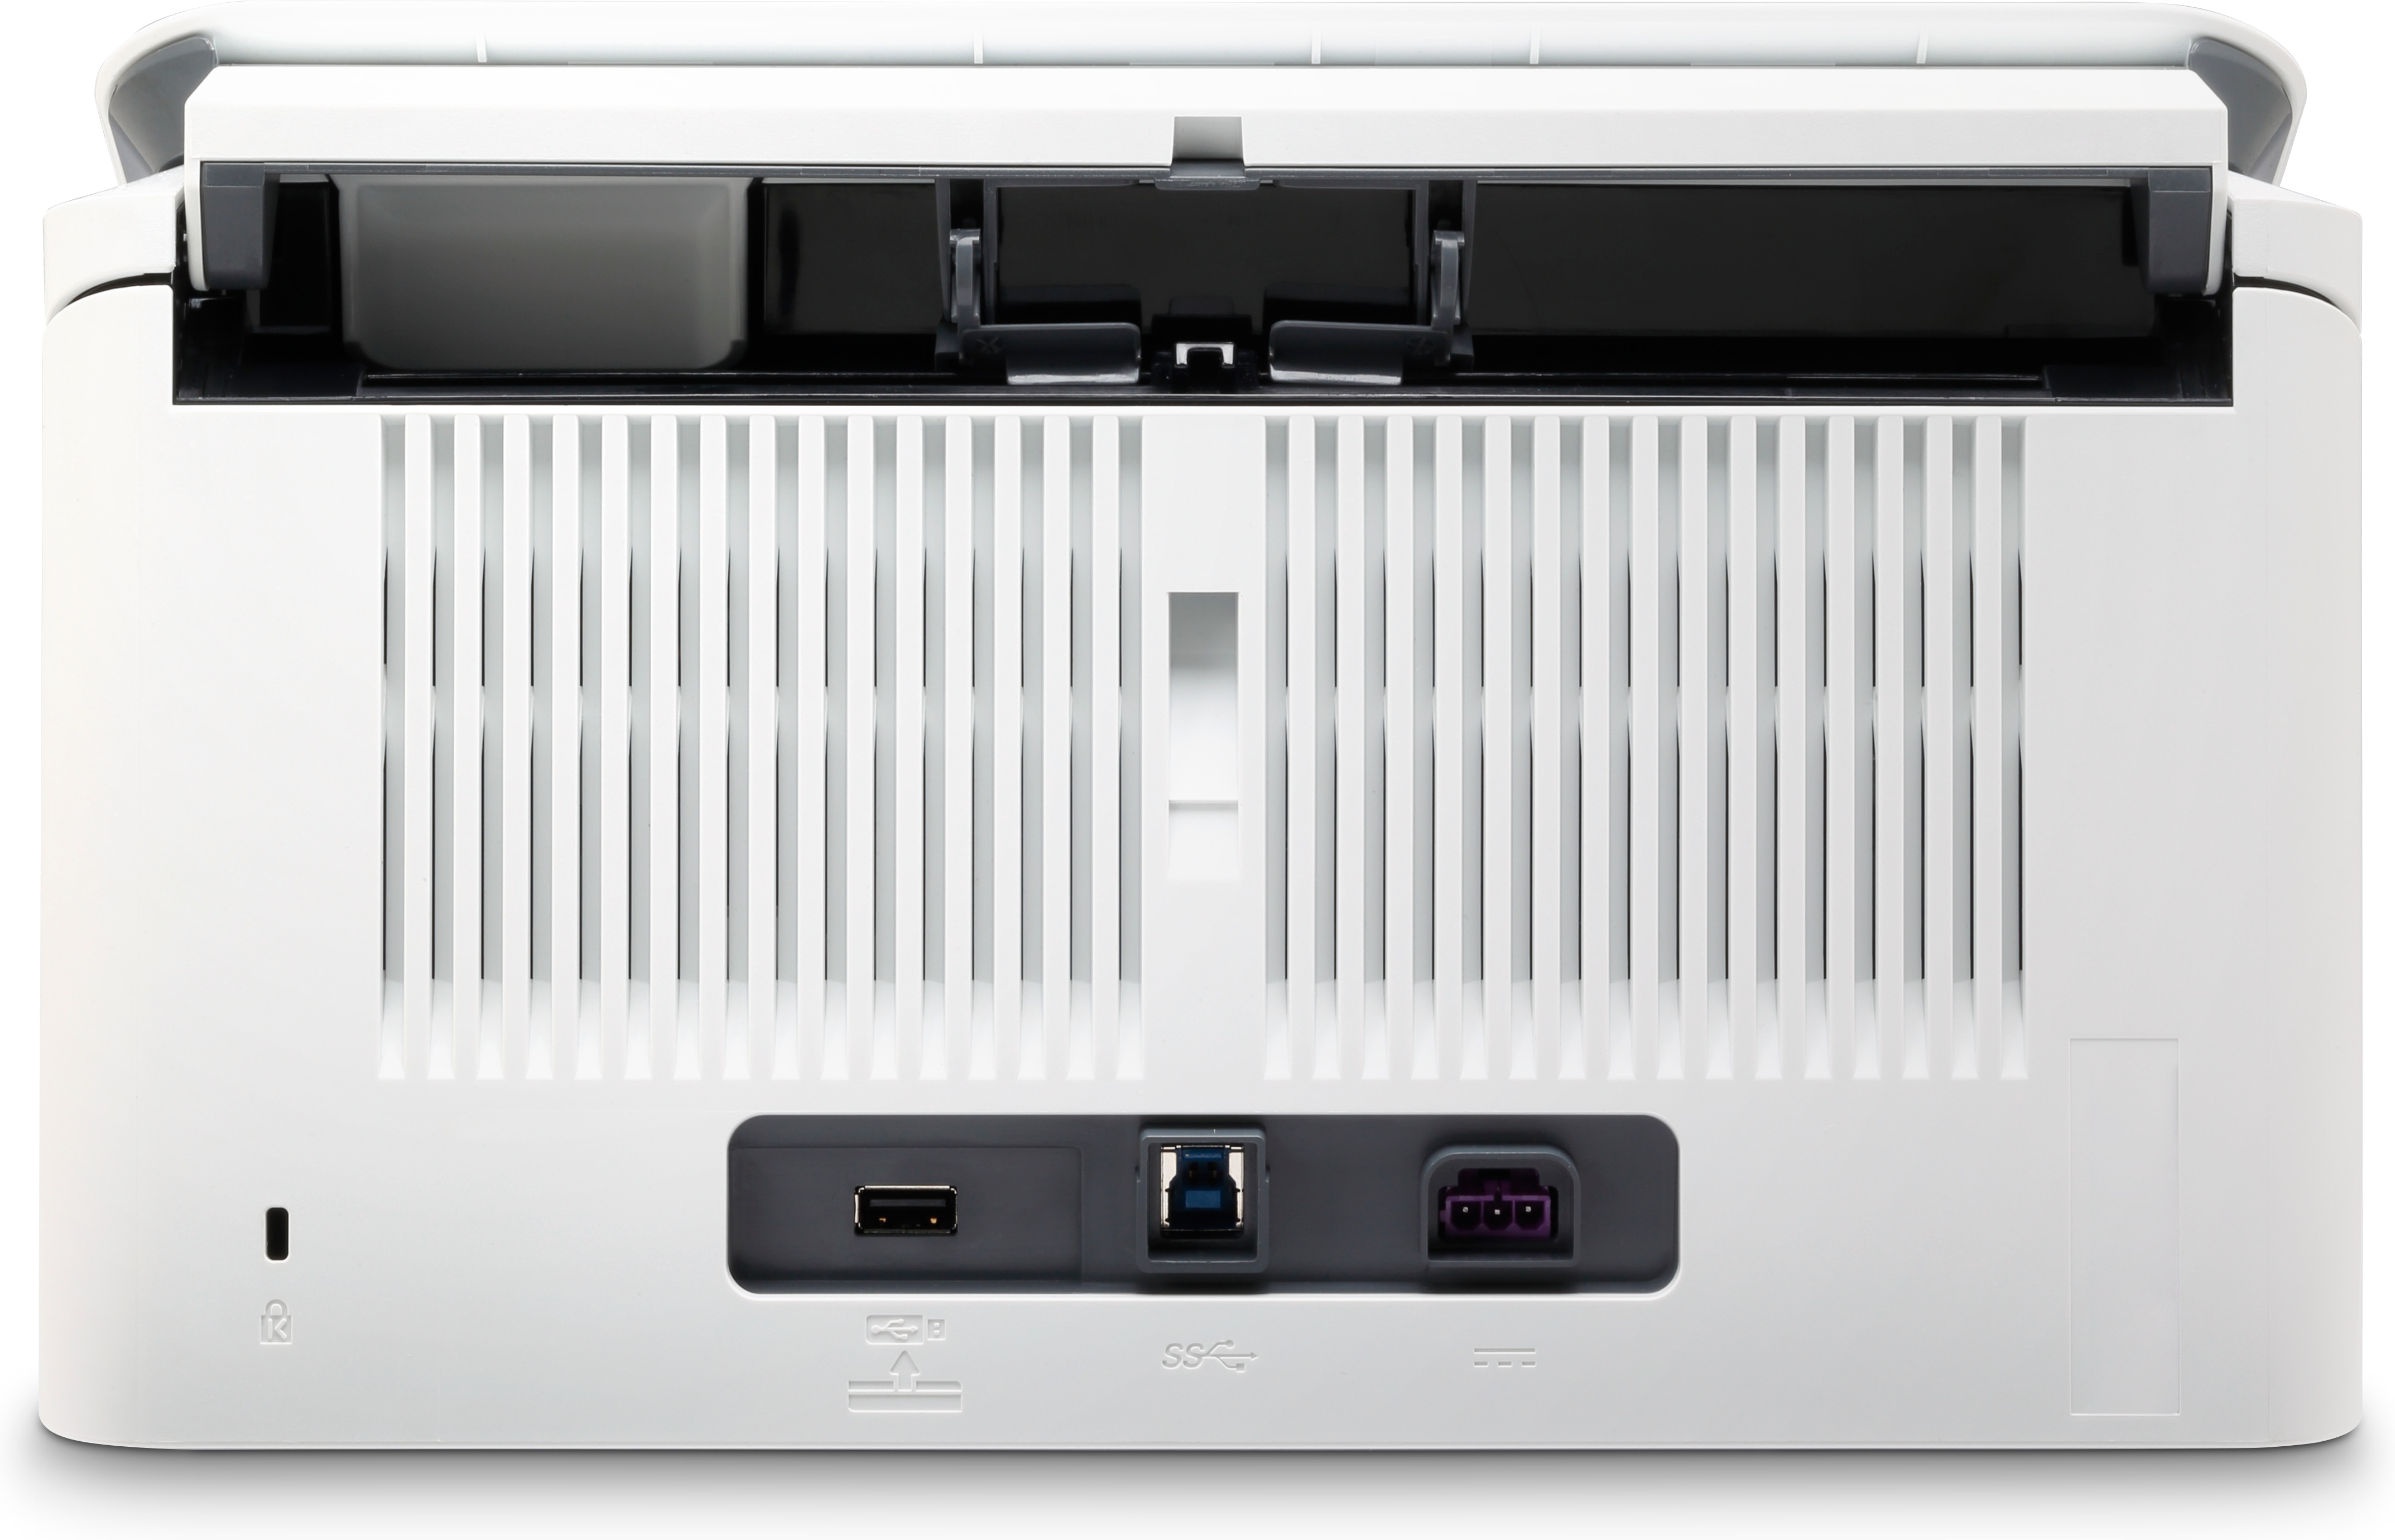 HP ScanJet Enterprise Flow 5000 s5 - Dokumentenscanner - CMOS / CIS - Duplex - 216 x 3100 mm - 600 dpi x 600 dpi - bis zu 65 Seiten/Min. (einfarbig)